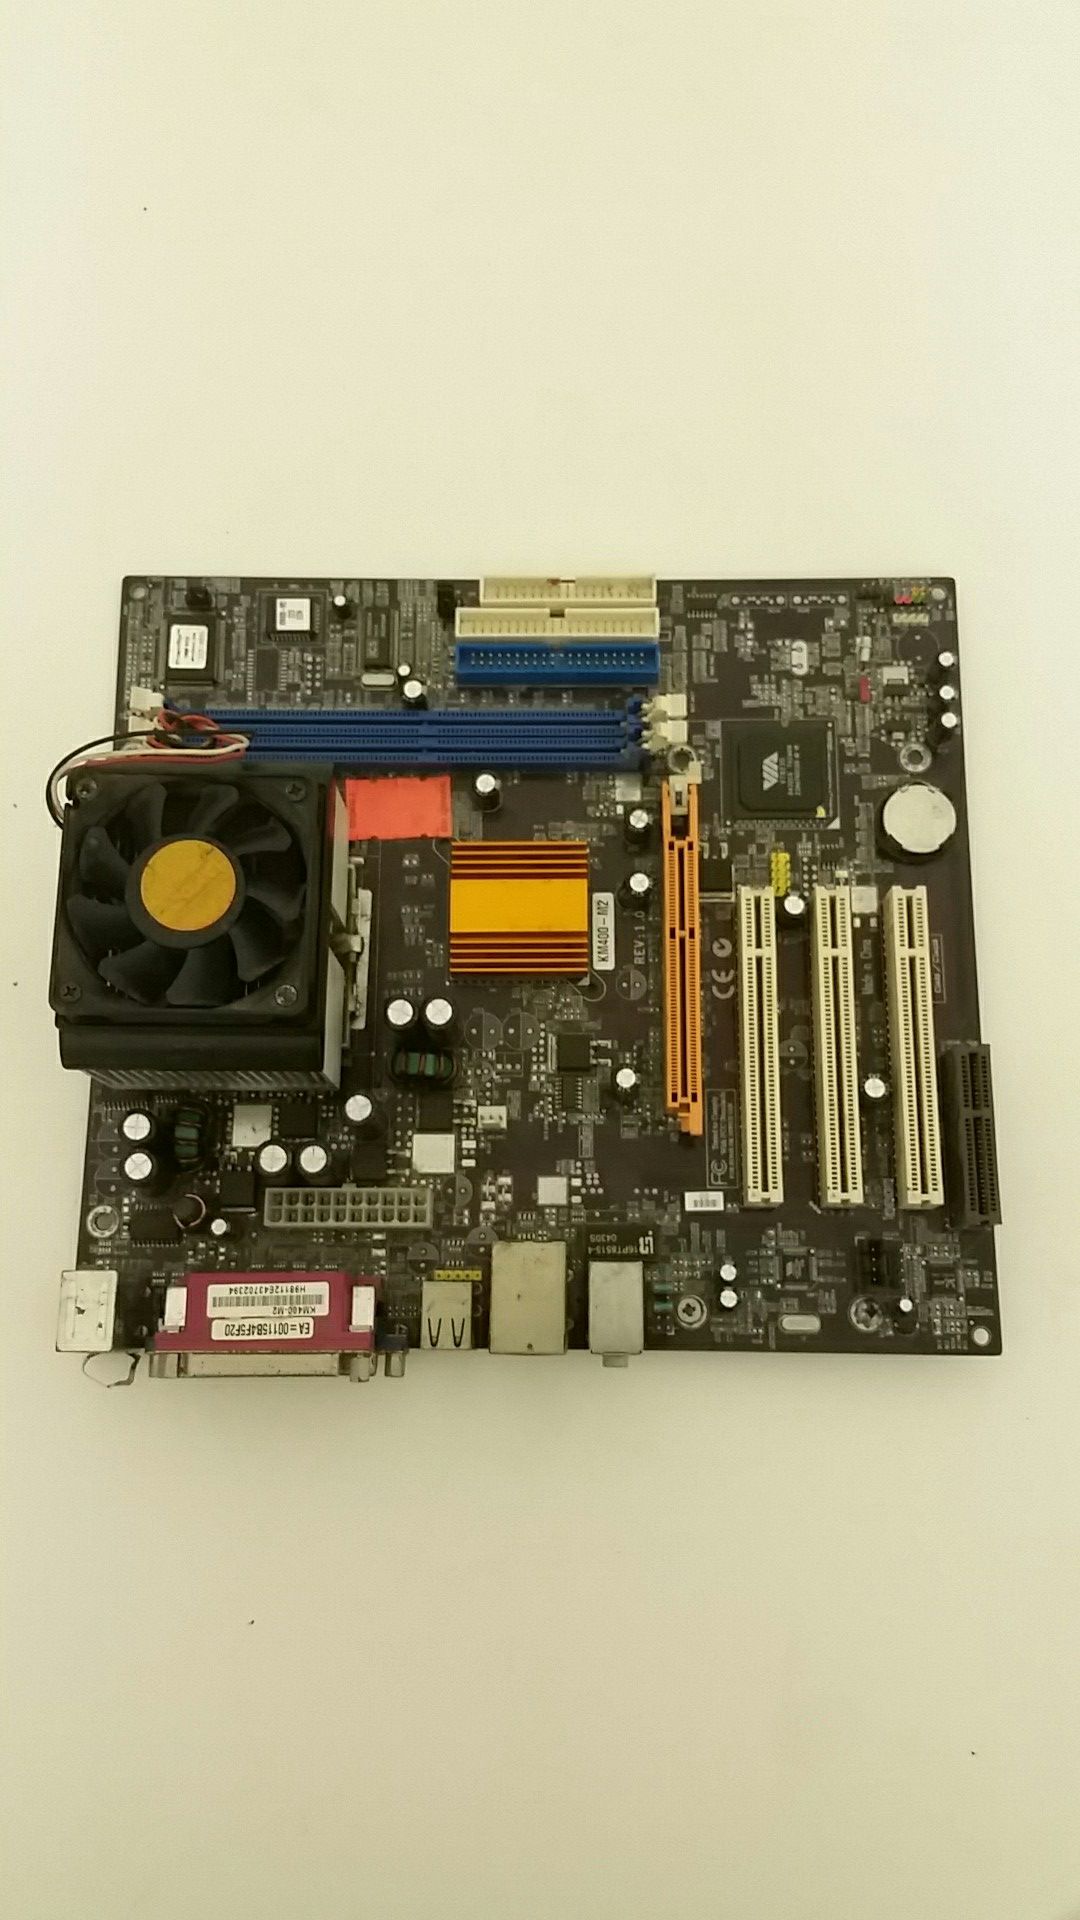 Old motherboard (Phoenix Bios)(Via VT 8235)(KM400-M2)(EA-00116B4F5F20)